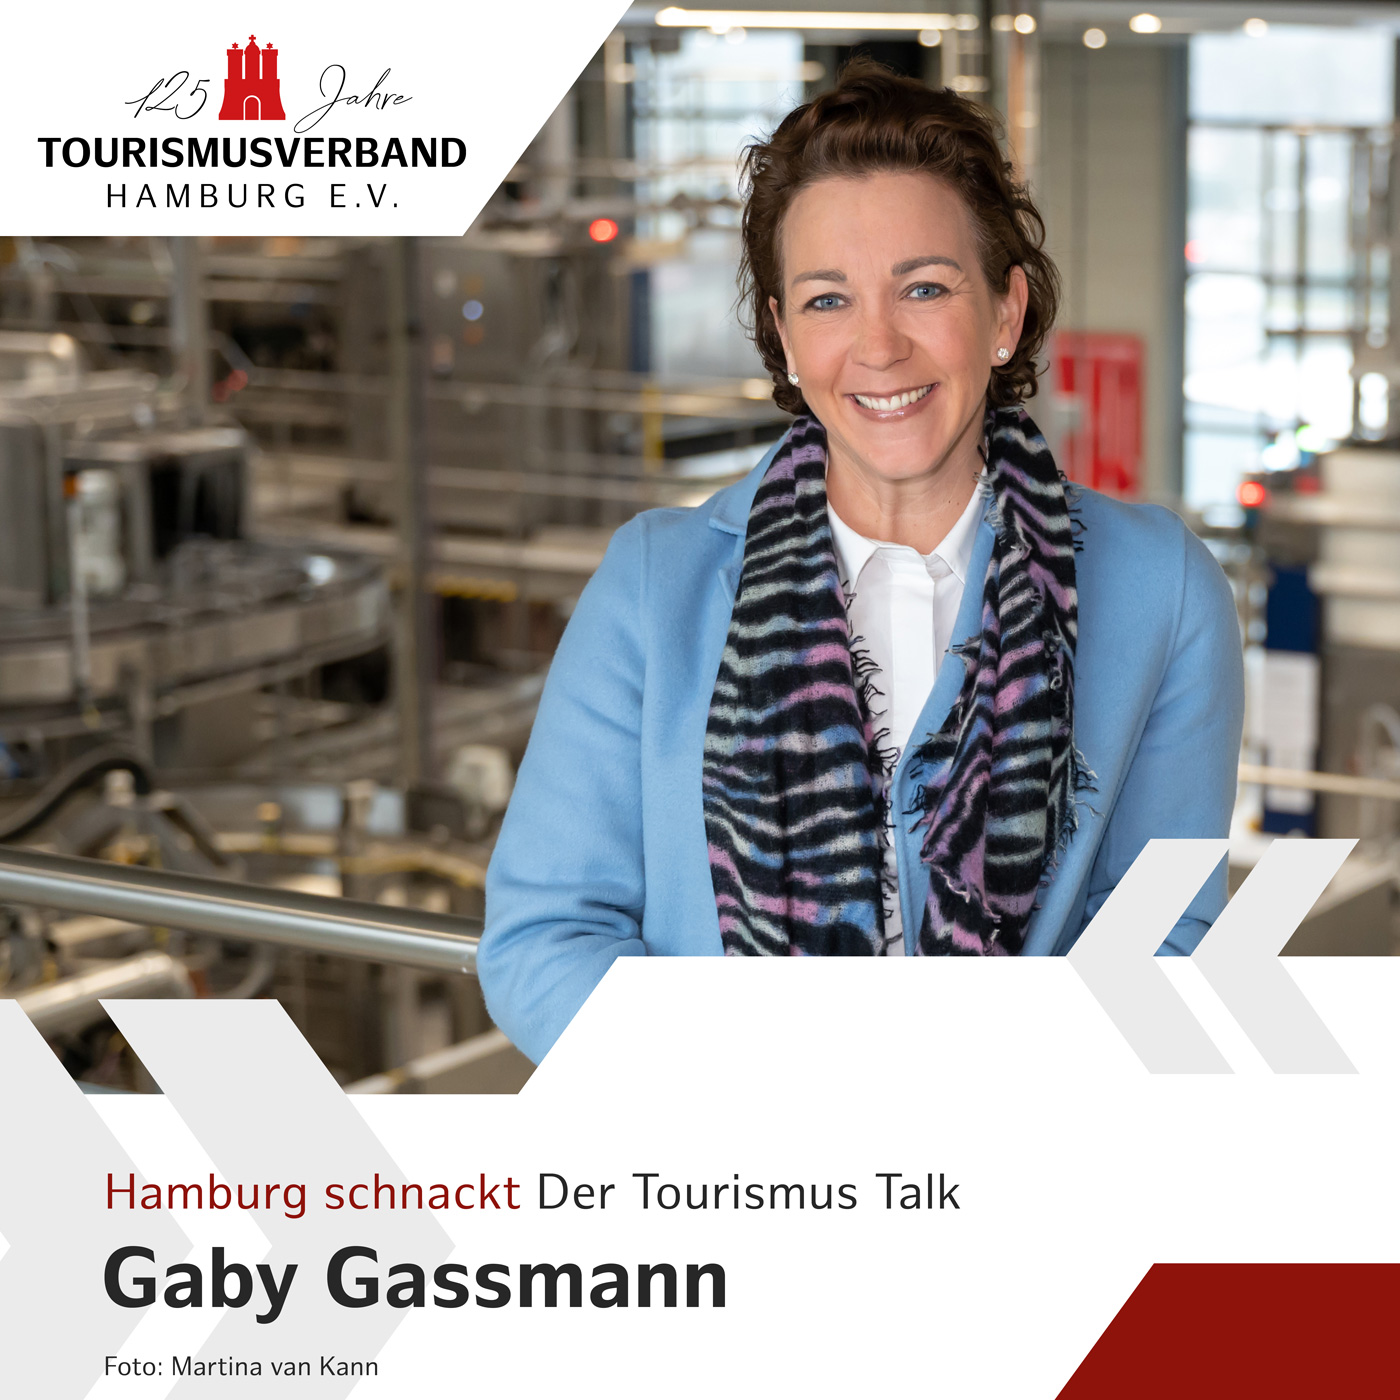 Hamburg schnackt mit Gaby Gassmann